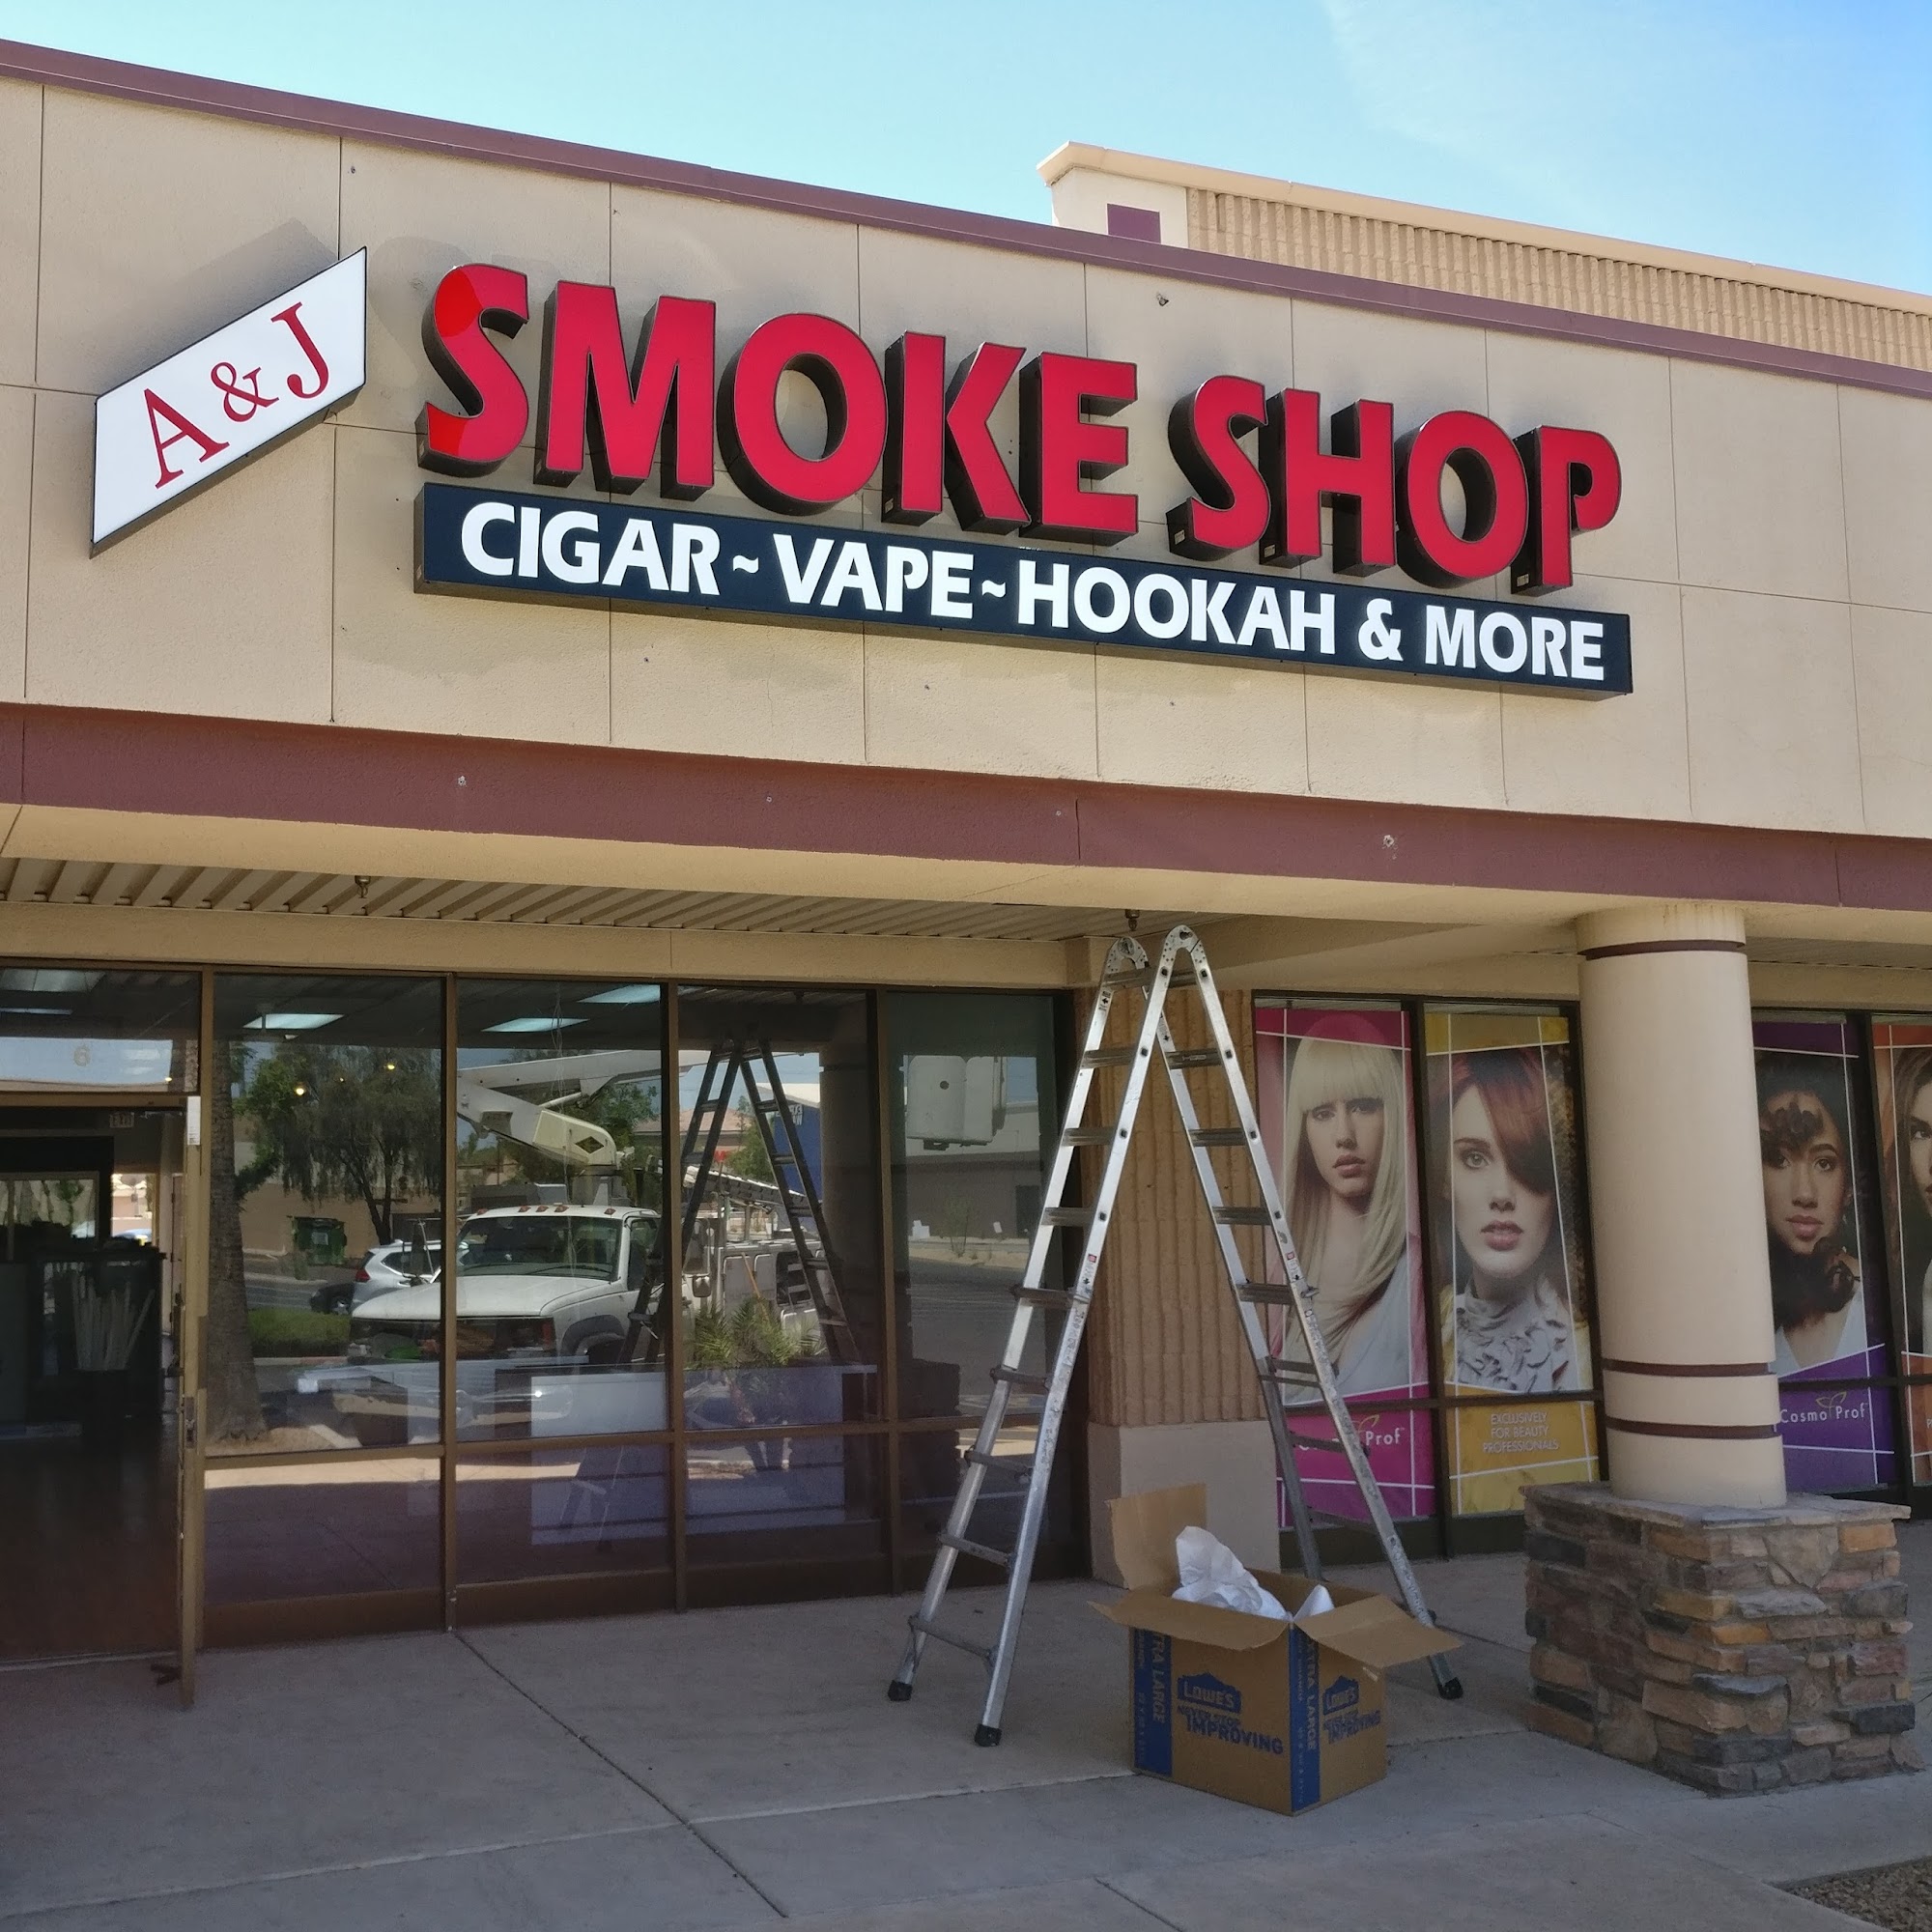 A&J Smoke Shop